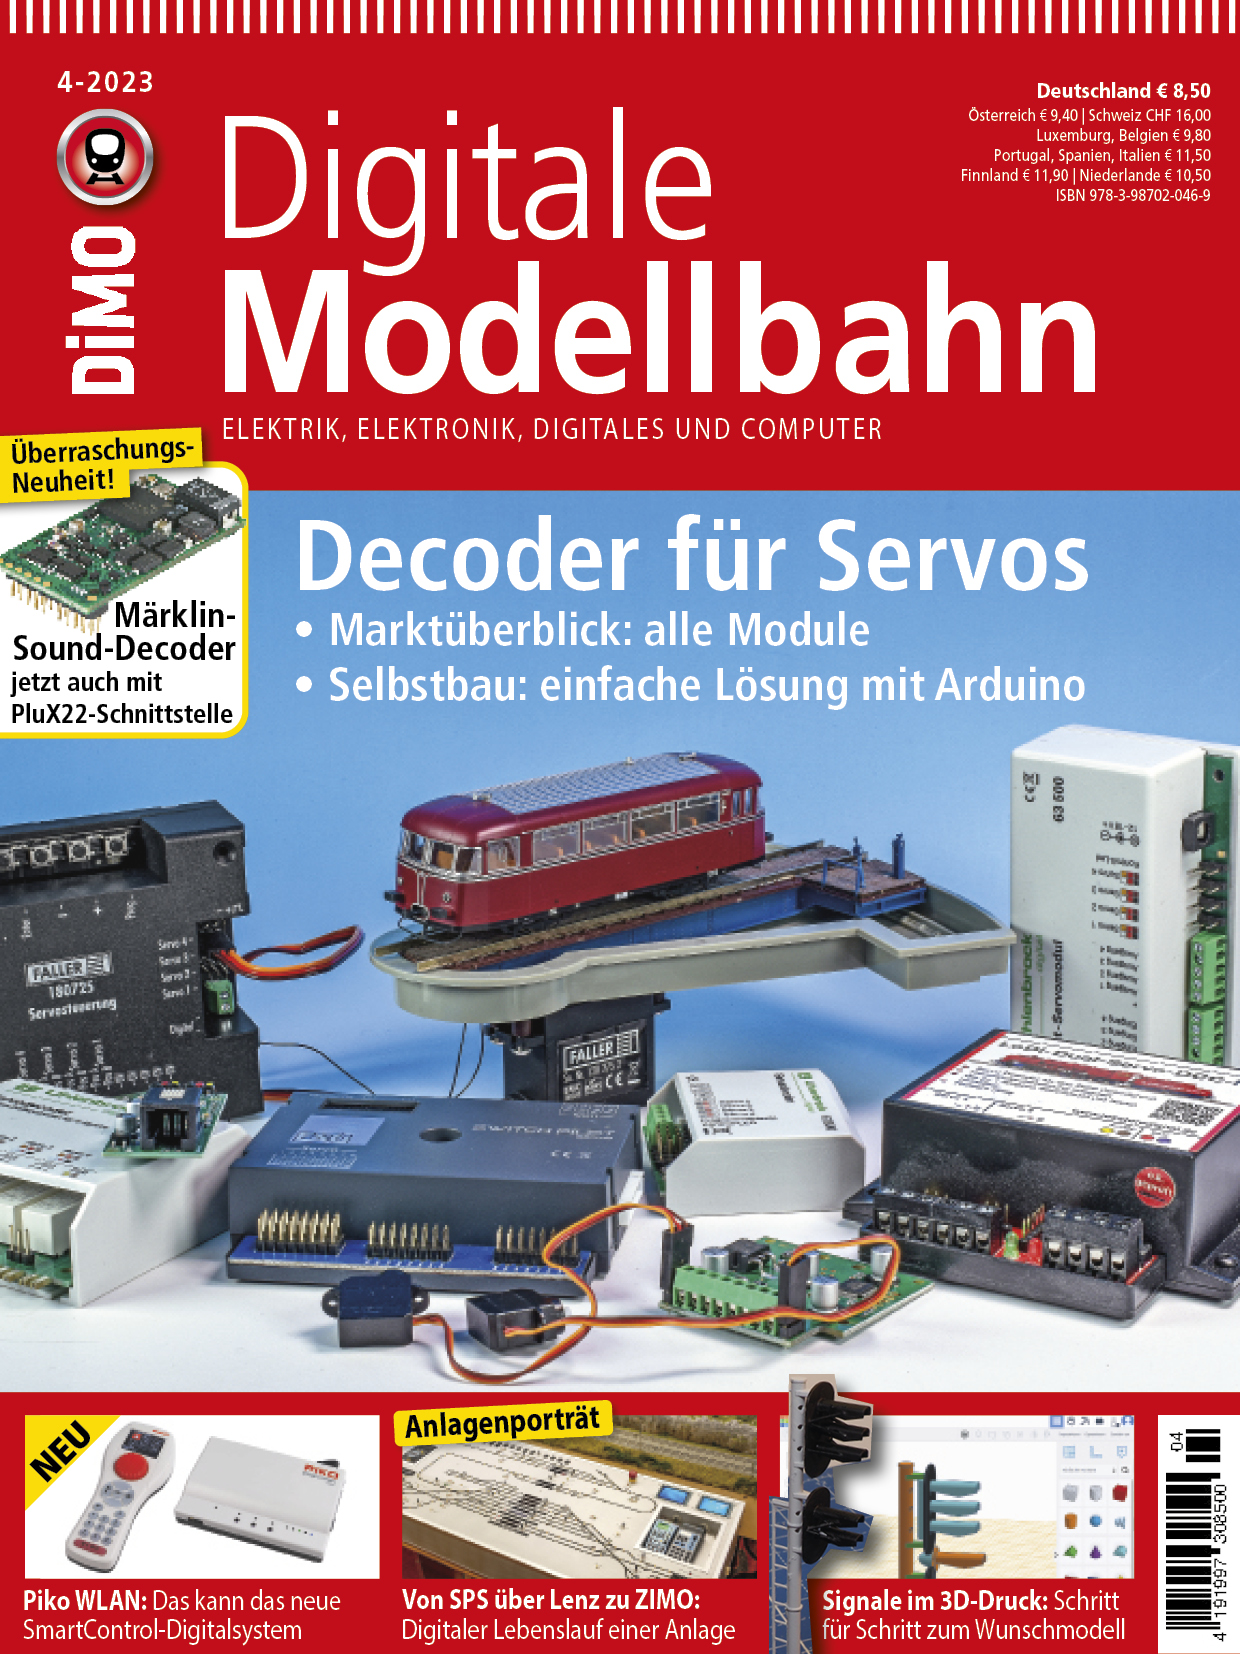 Z Digitale Modellbahn 4/2023 DiMo Zubehör Decoder für Servos